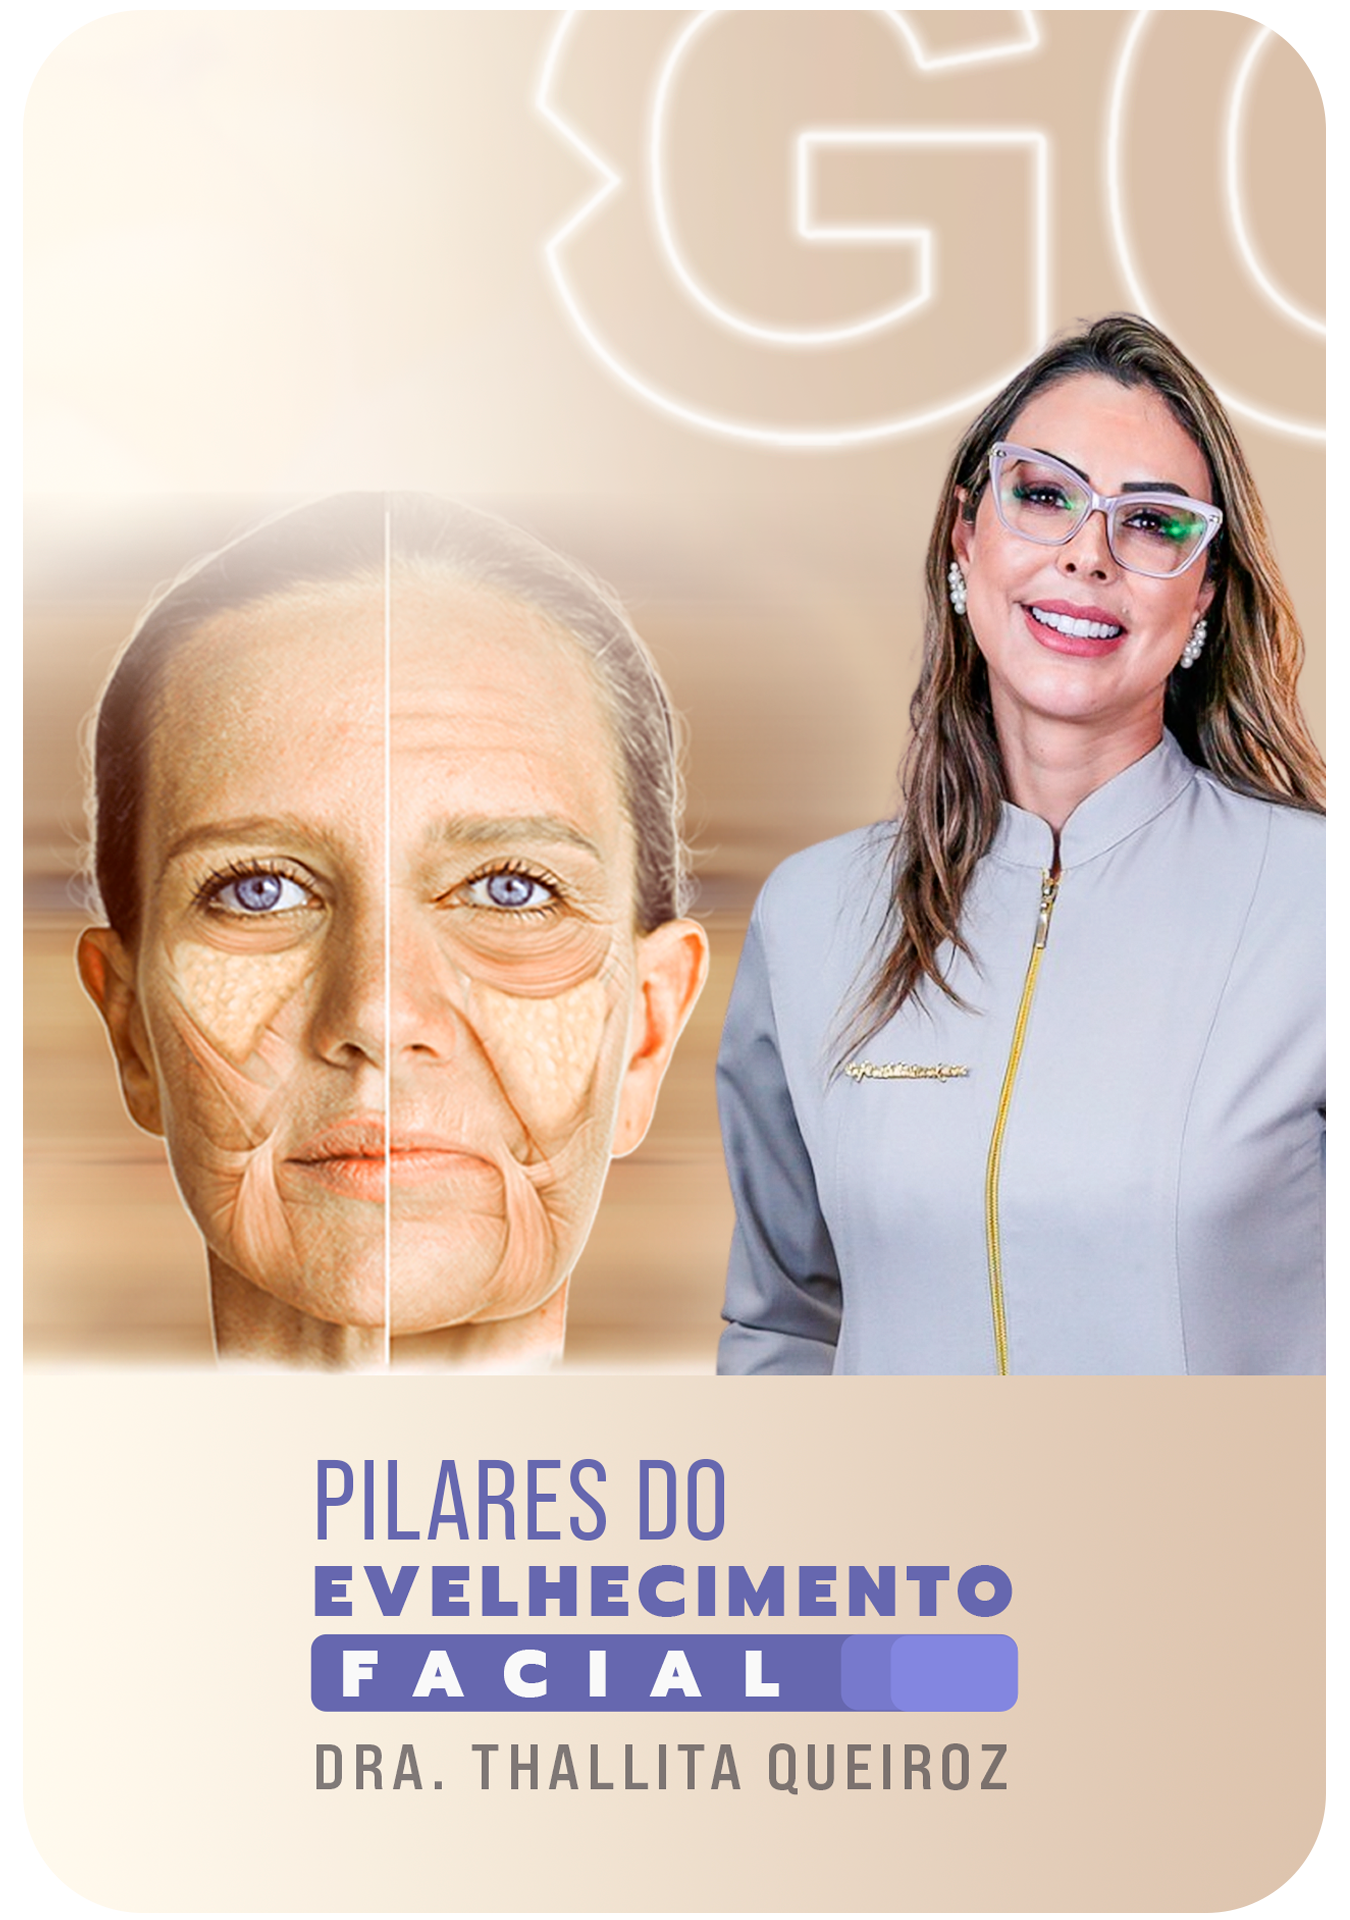 Pilares do envelhecimento facial - Thallita Queiroz